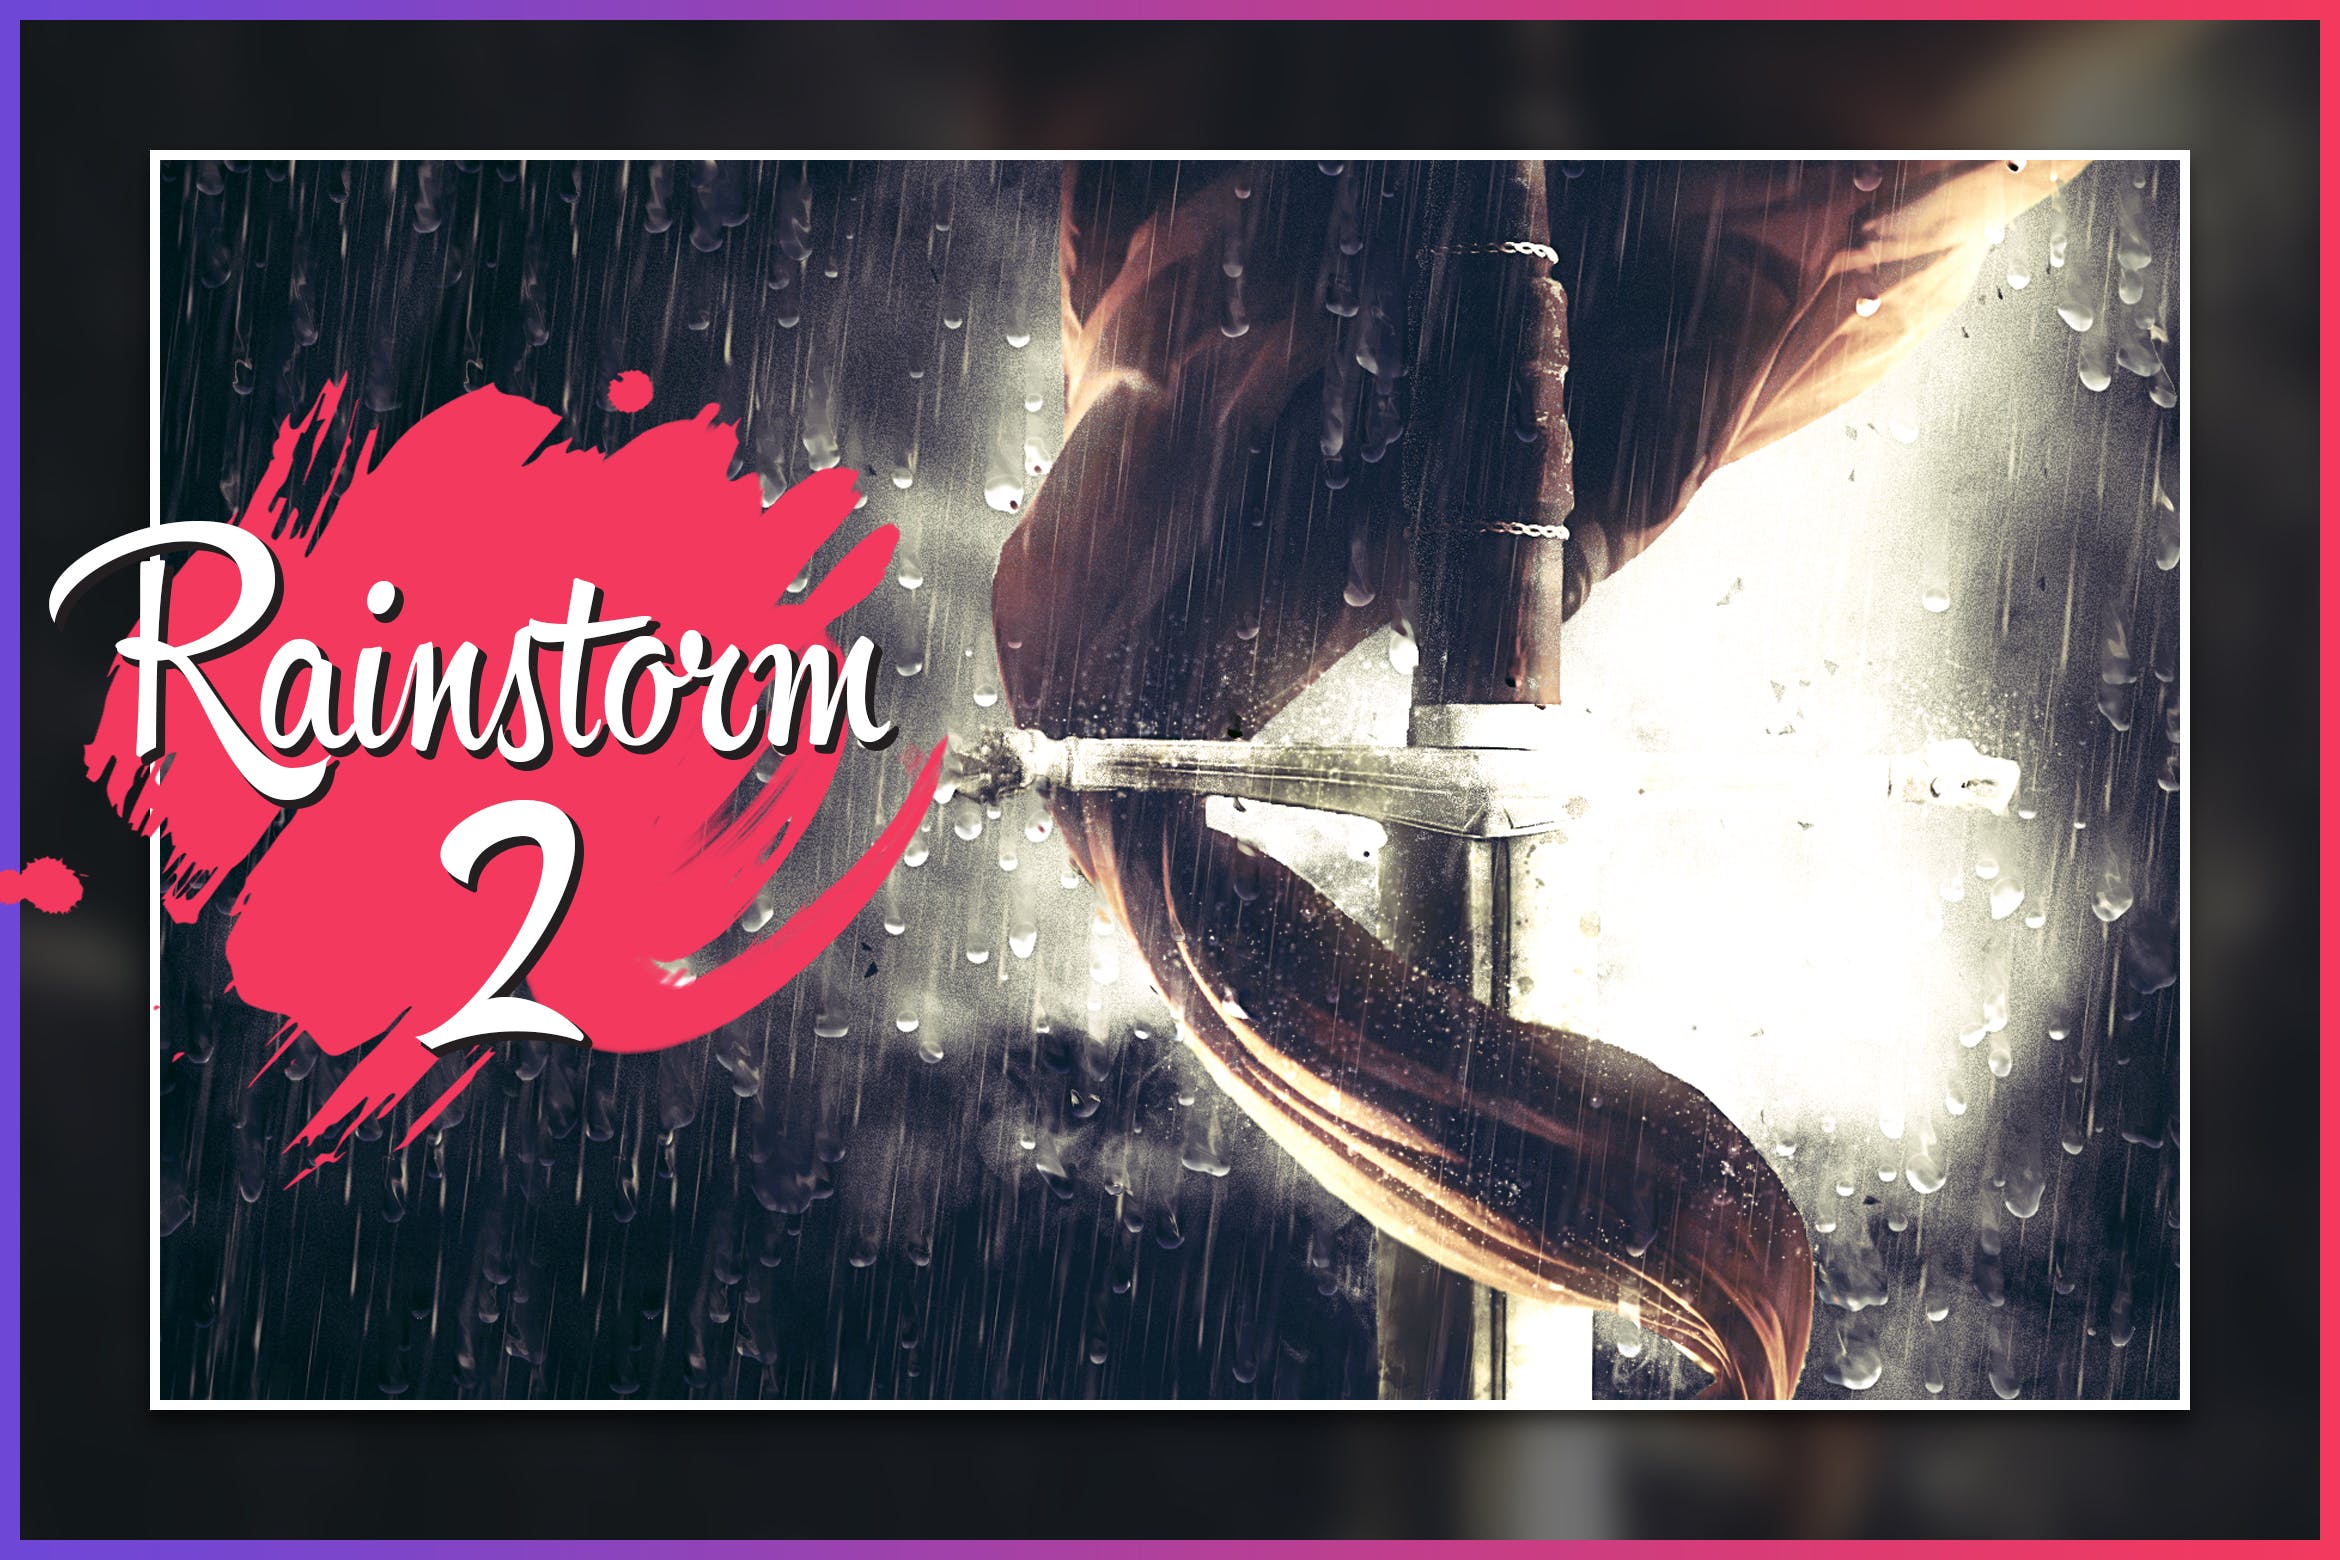 暴风雨照片背景特效16图库精选PS动作 Rainstorm 2 CS4+ Photoshop Action插图